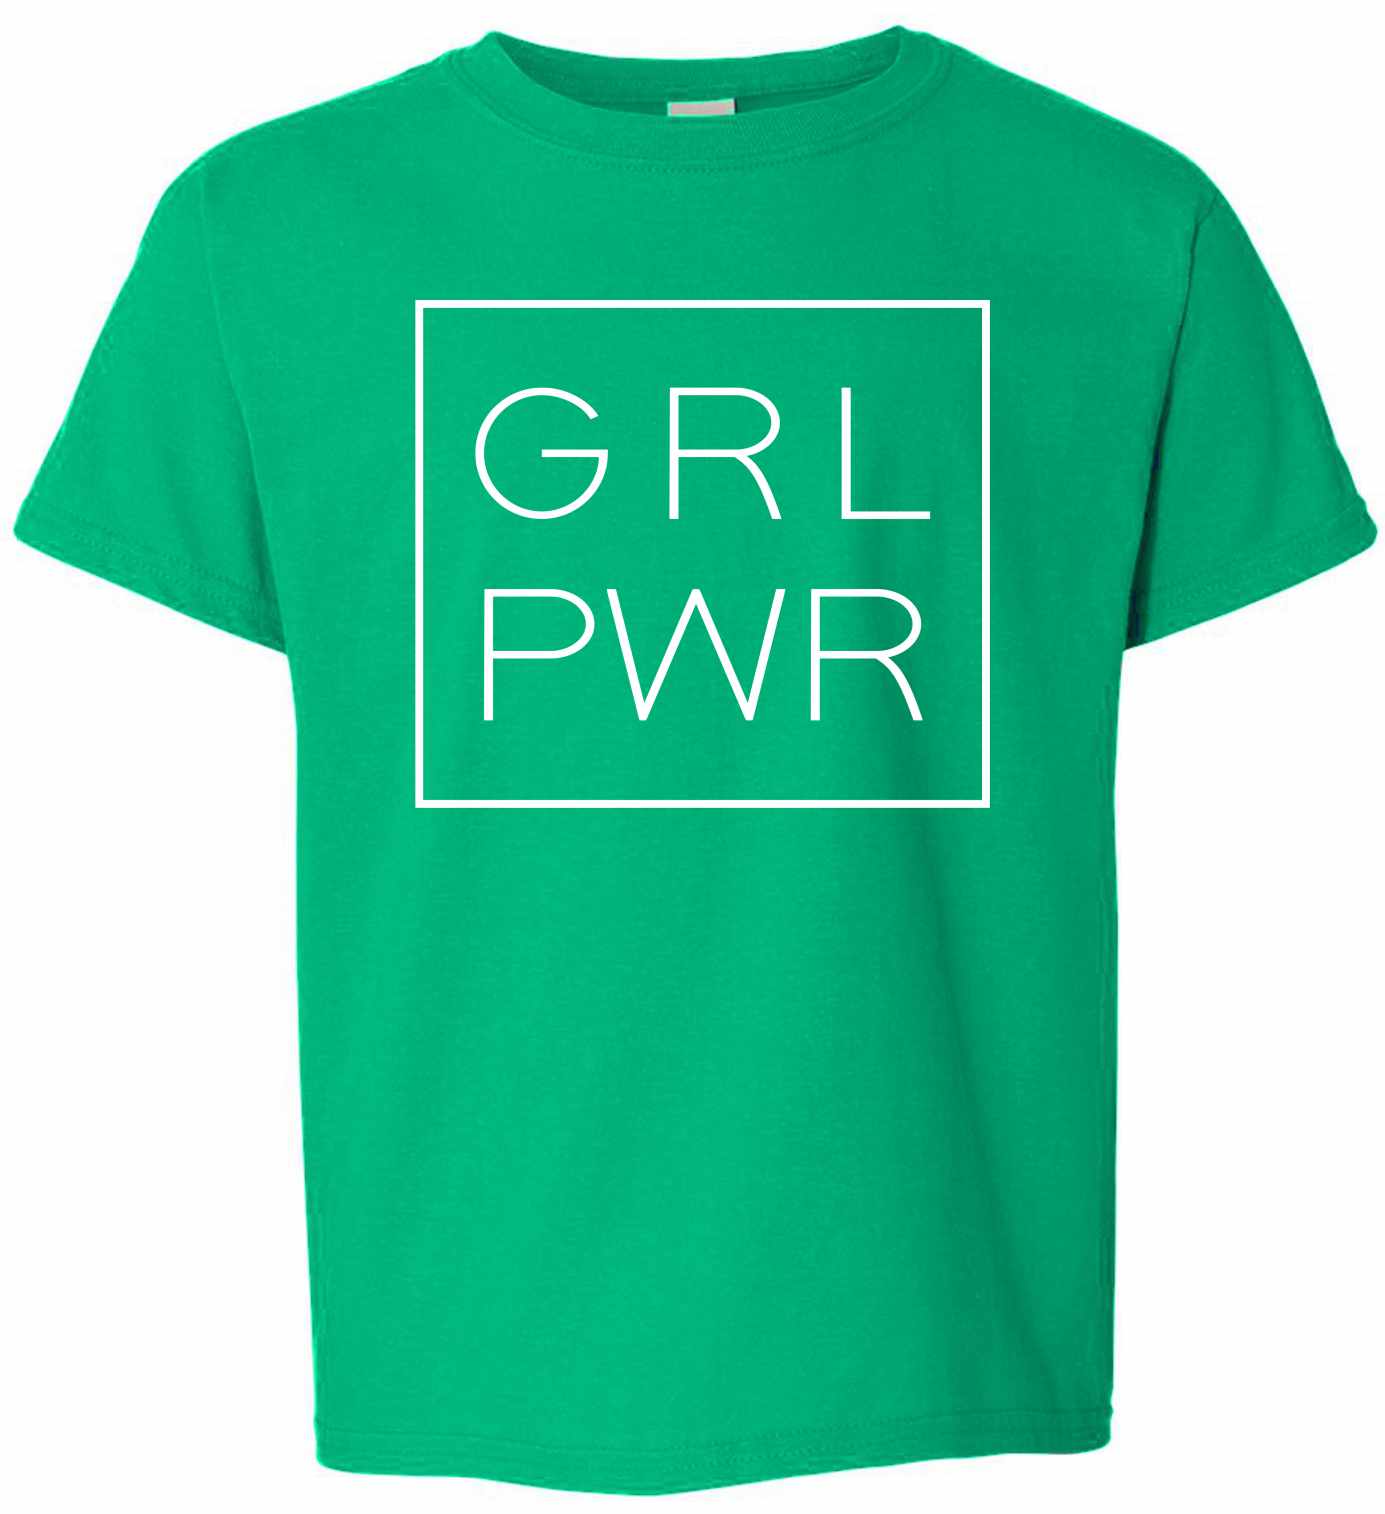 Girl Power on Kids T-Shirt (#1259-201)